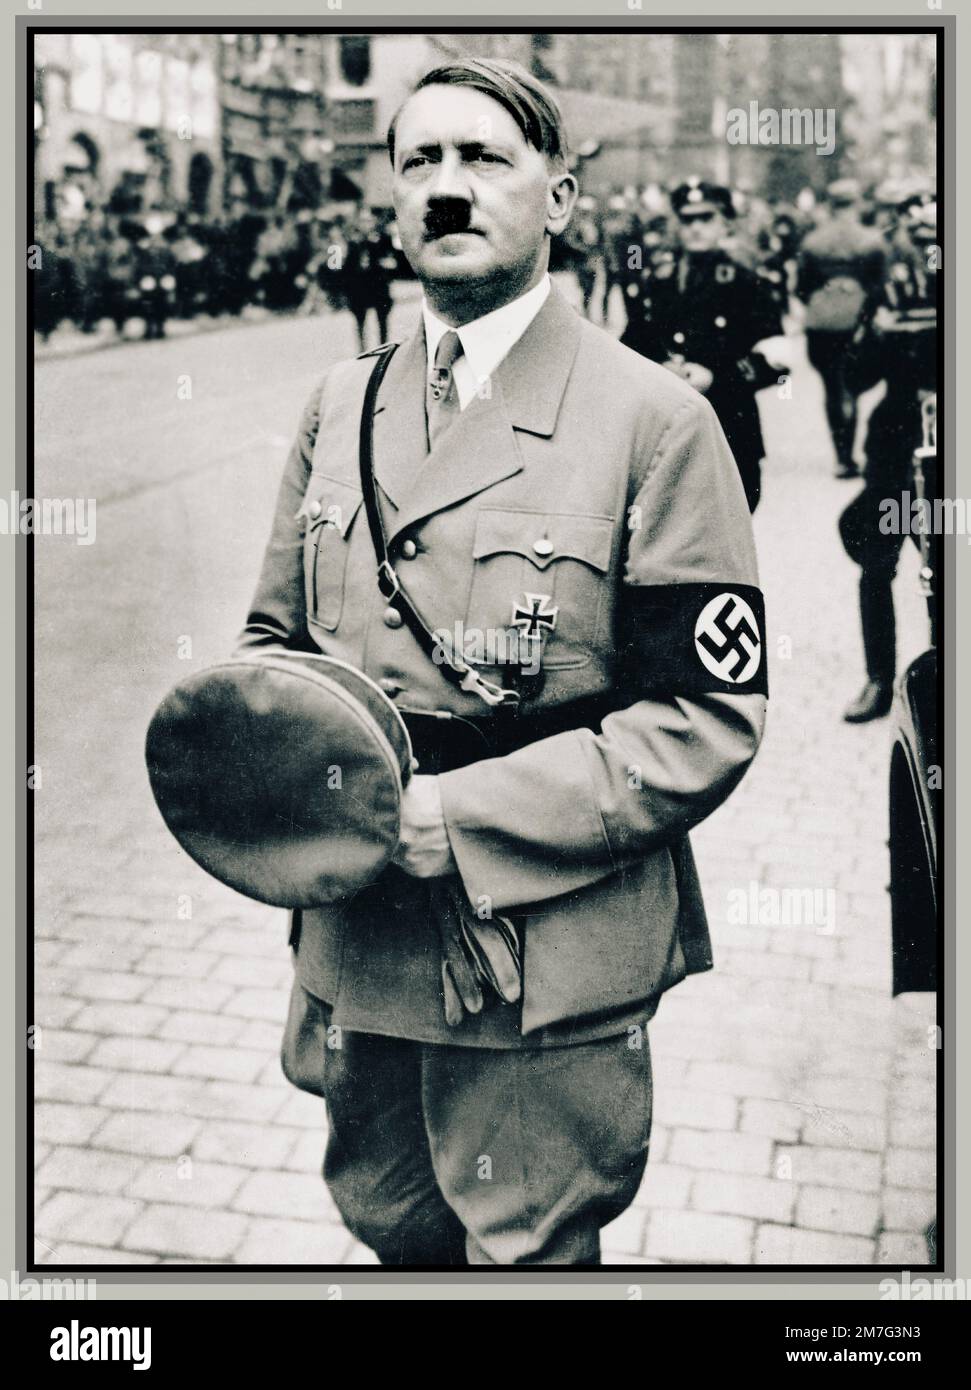 Adolf Hitler in uniforme con la fascia da braccio Swastika alla parata nazista di Norimberga Germania 1930s Foto Stock